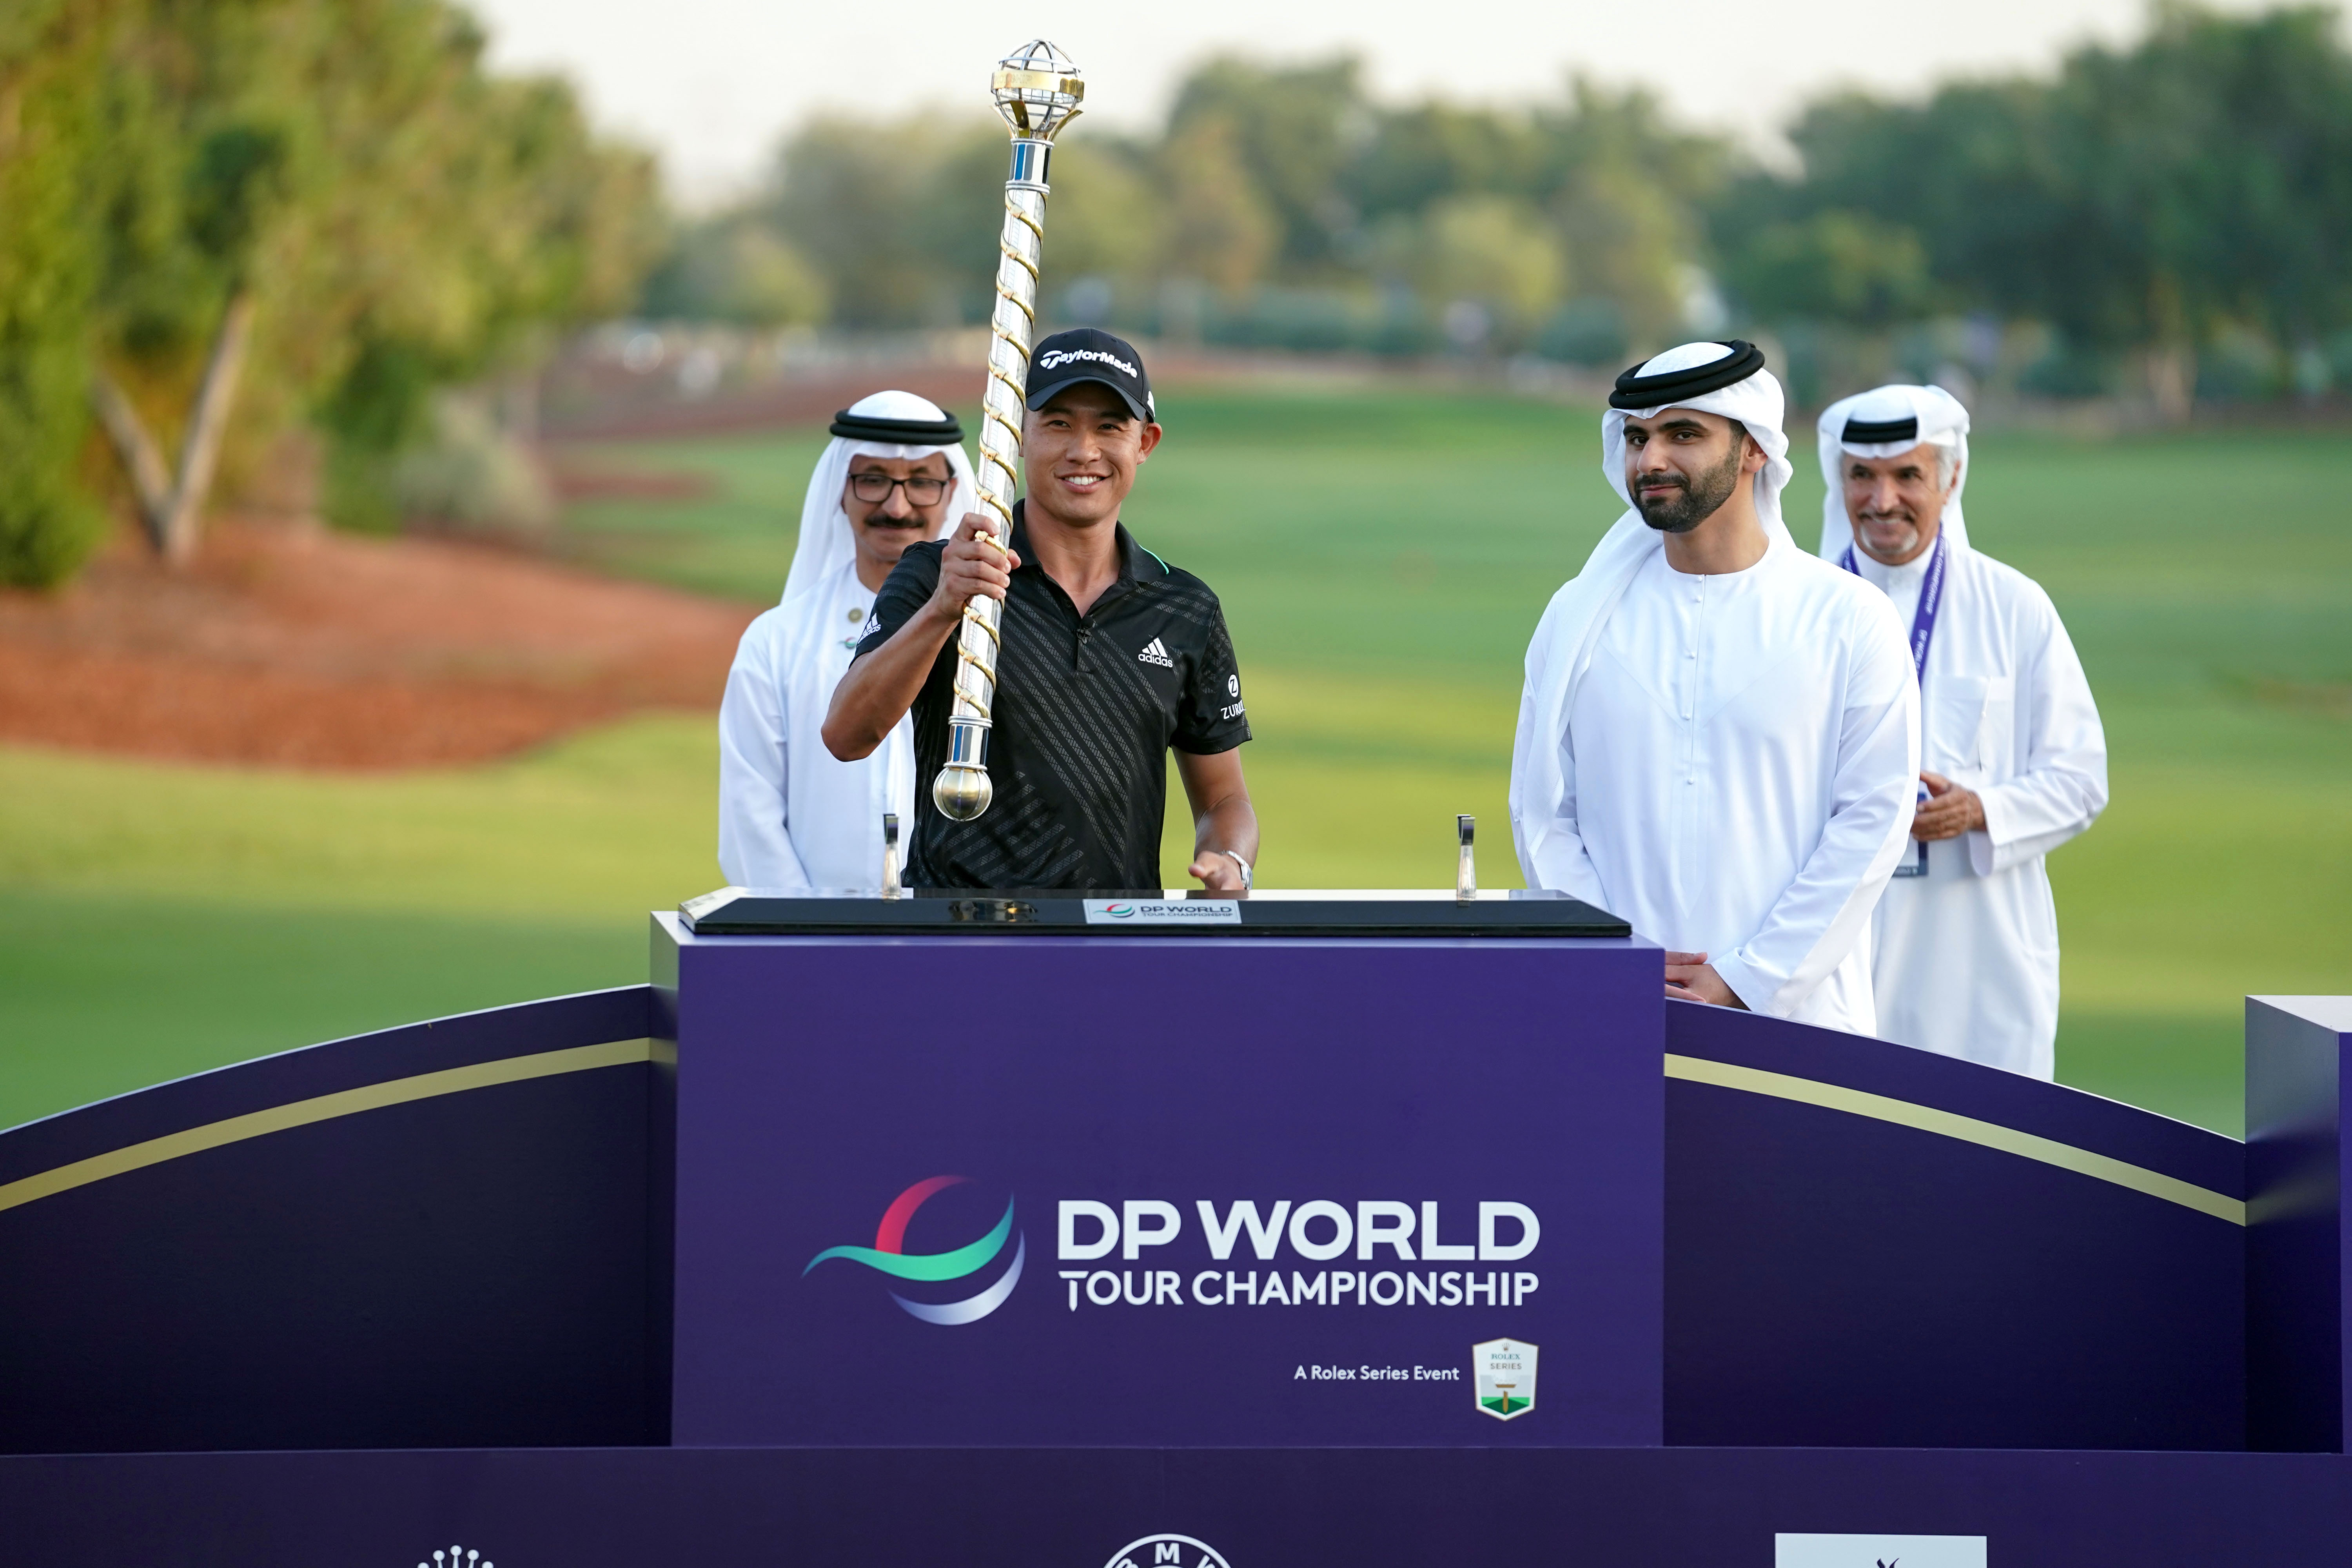 dp world tour championship dubai points